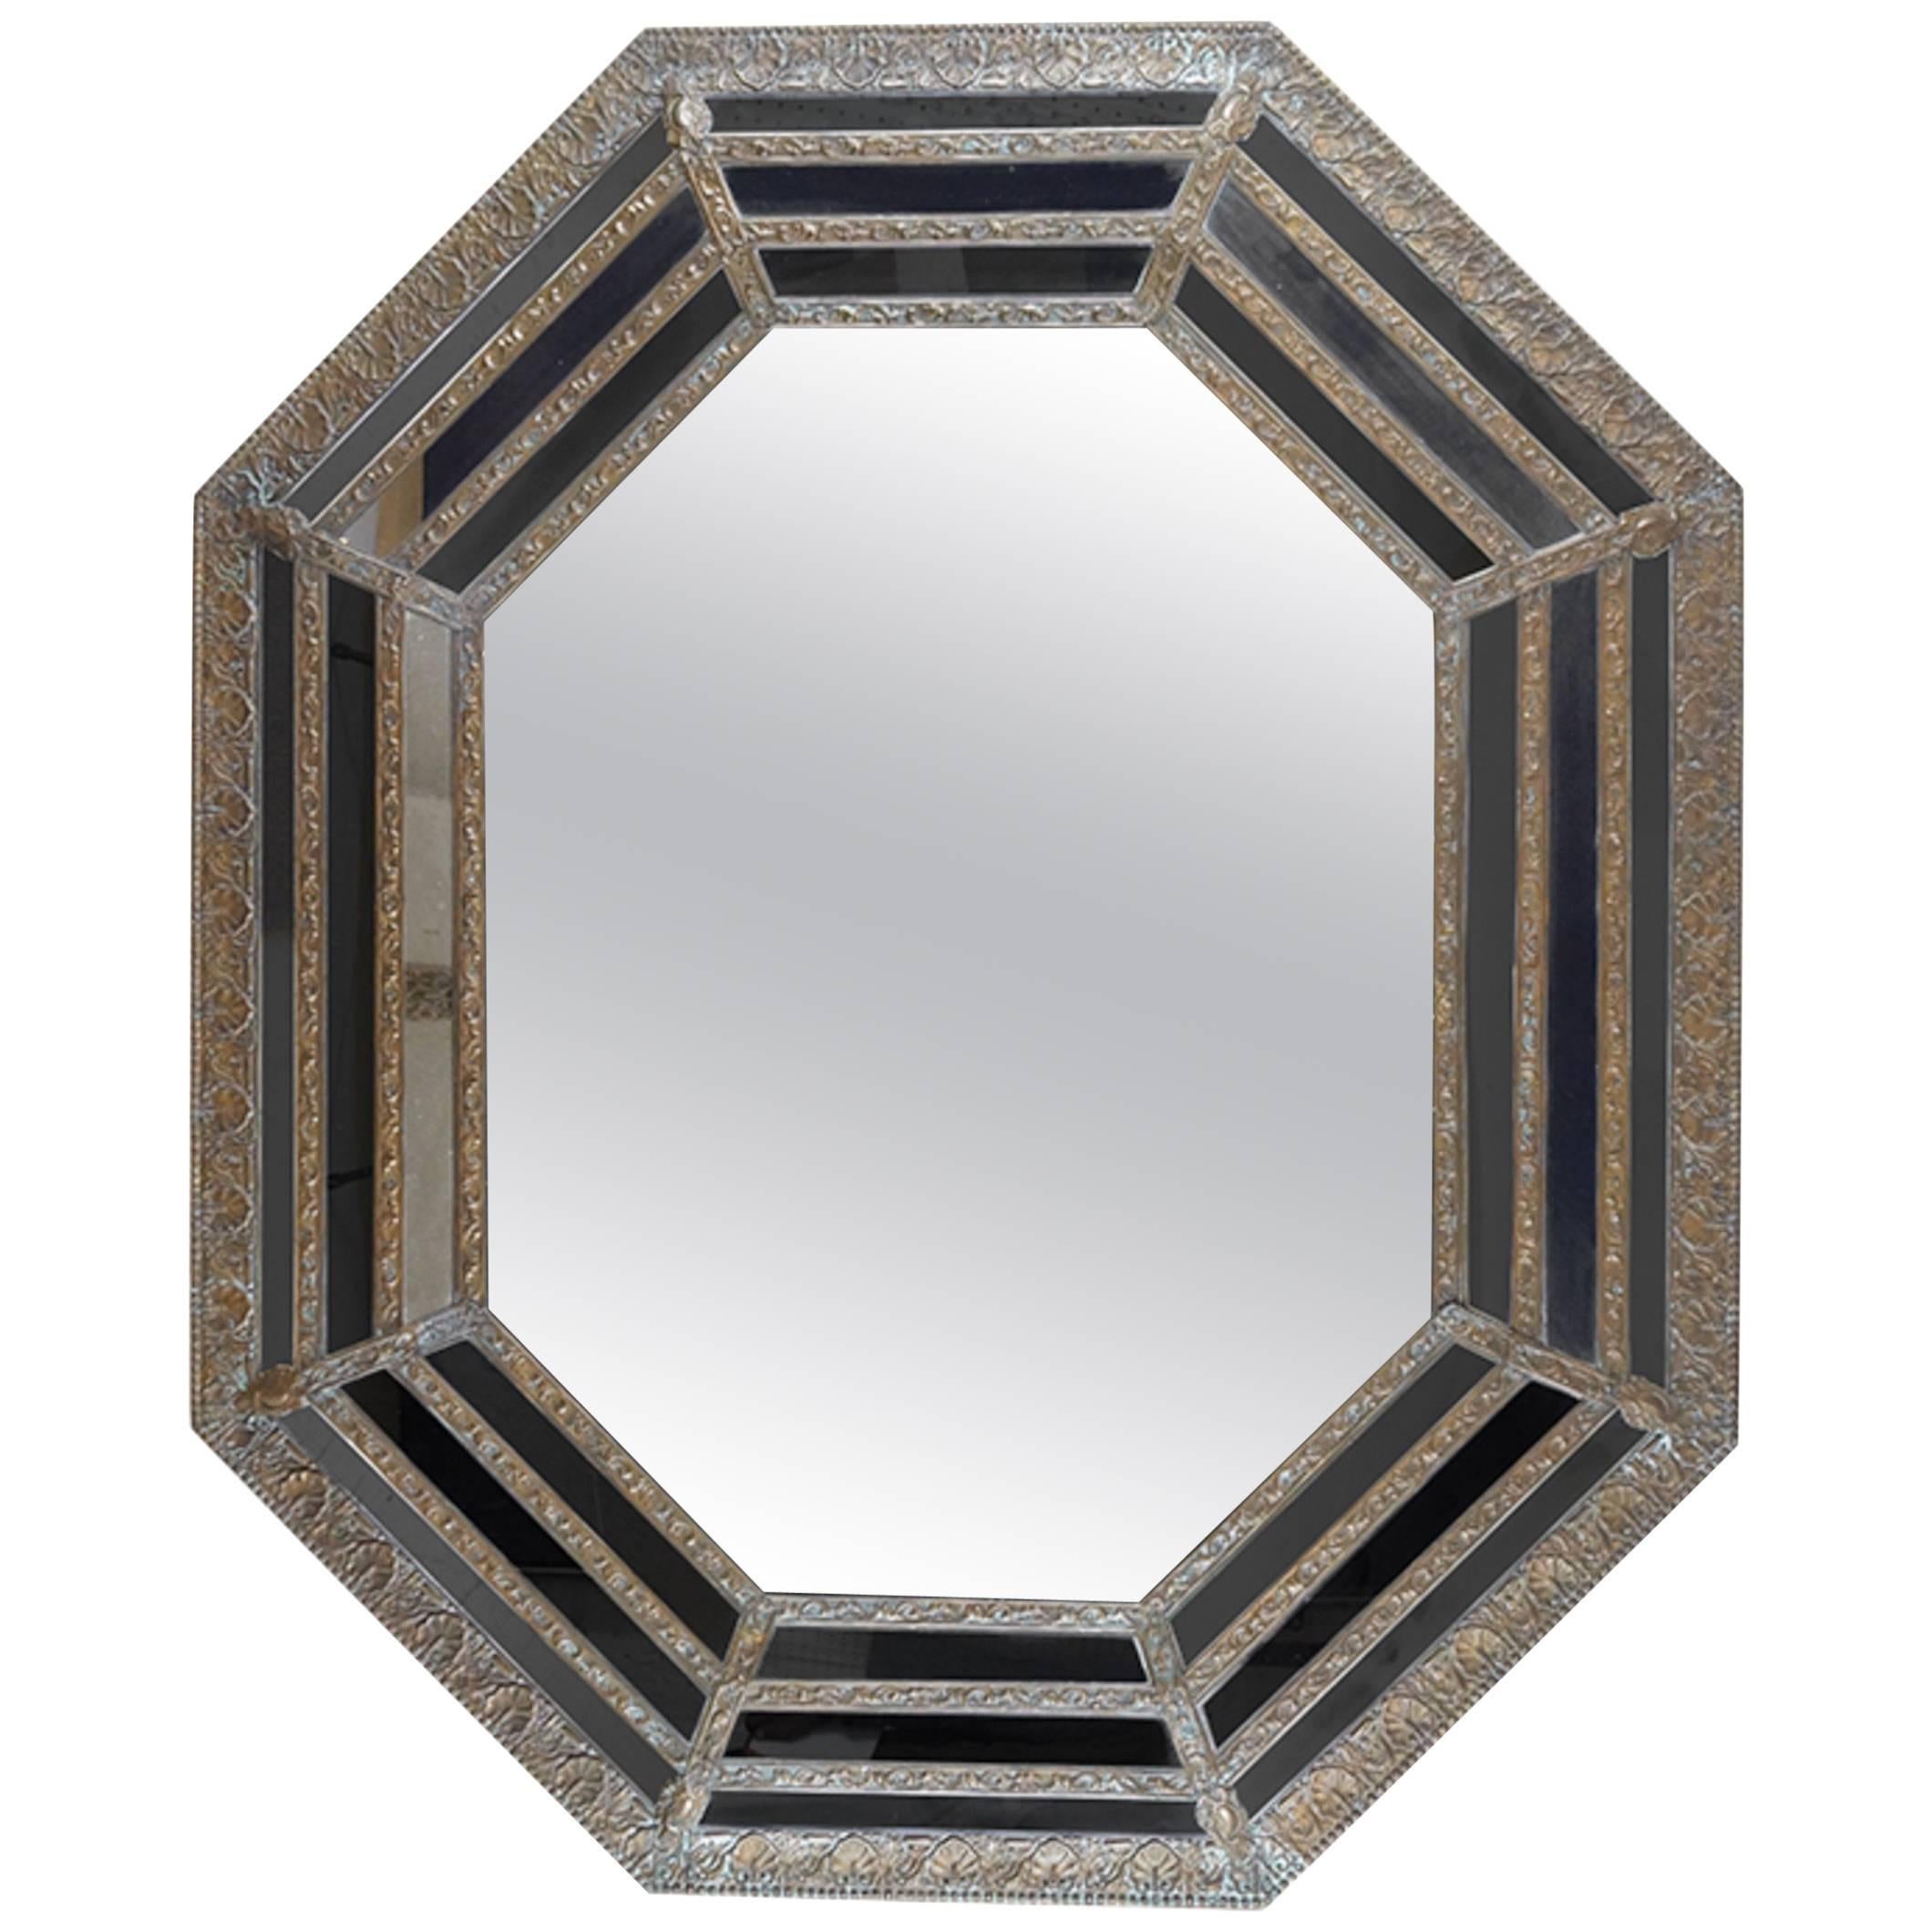 Miroir octogonal du 19ème siècle avec cadre en métal repoussé, plaque de miroir d'origine